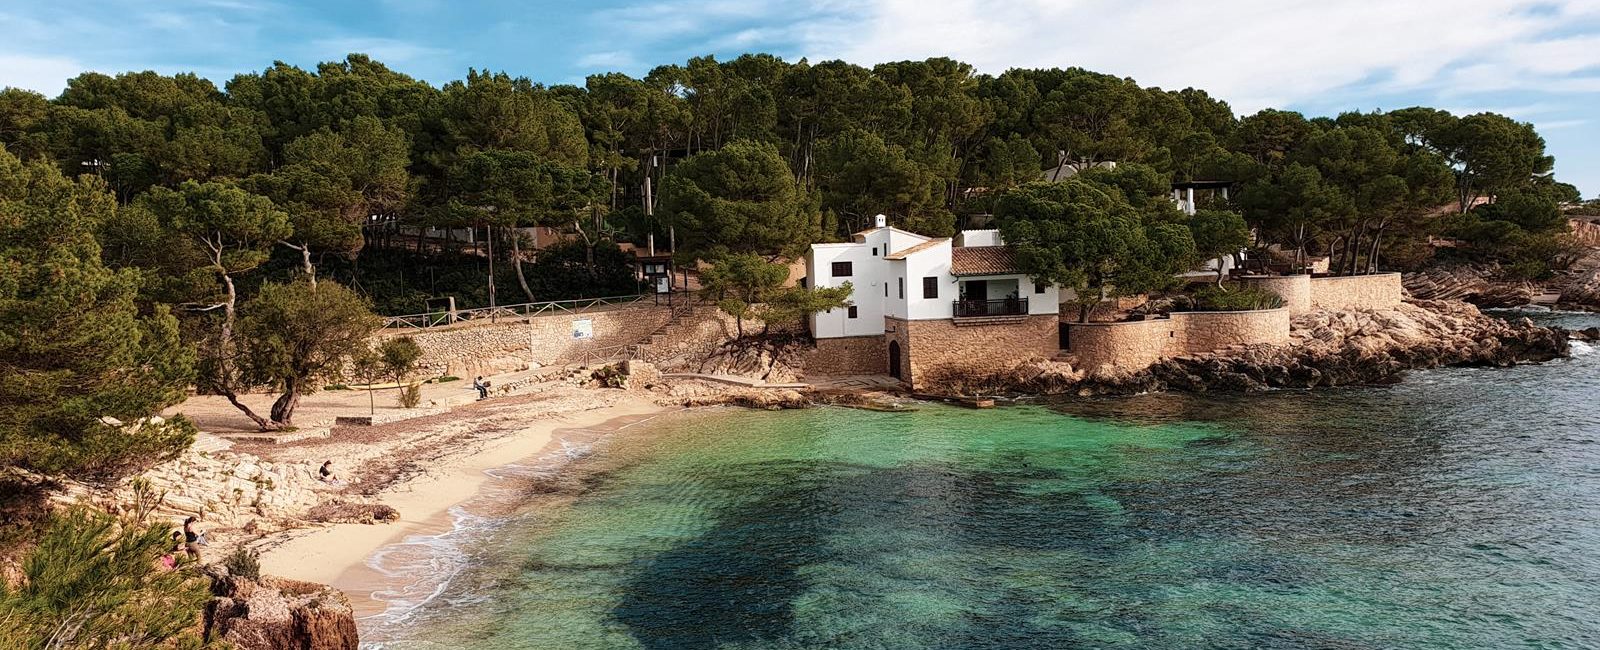 Cala Gat, the nicest beach in Majorca!